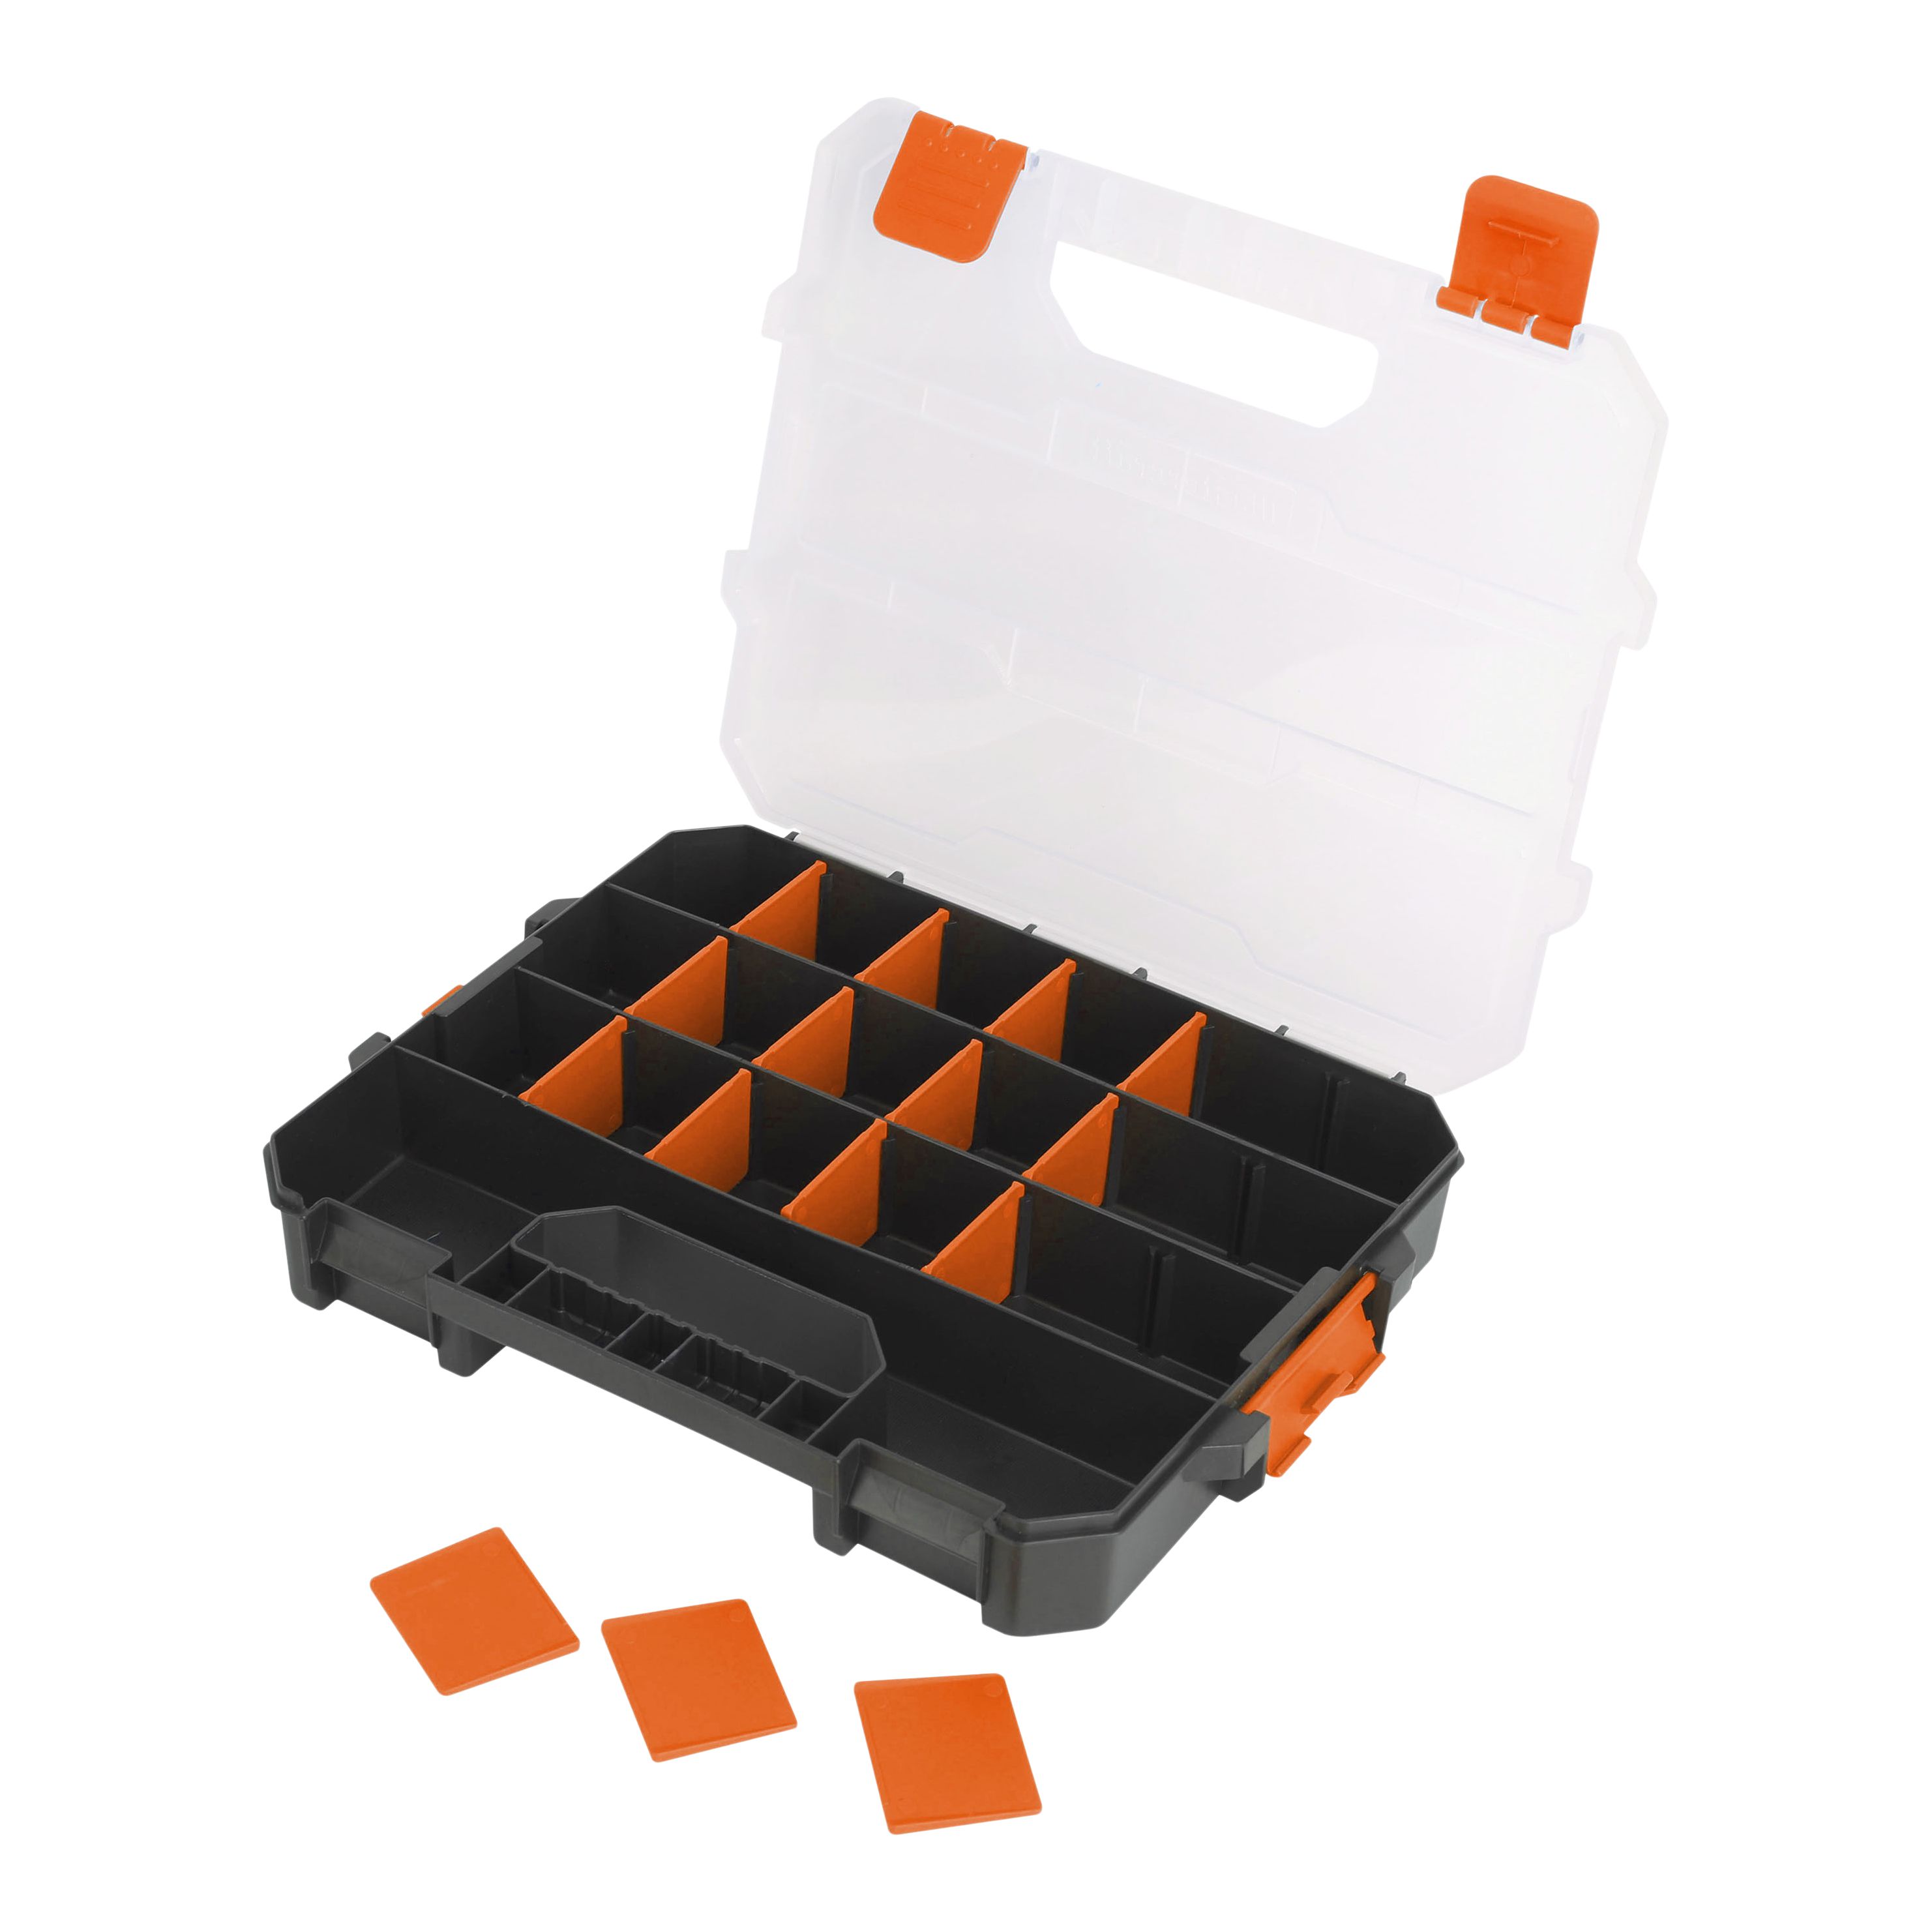 Magnusson Orange & transparent Compartment organiser case with 18 compartment